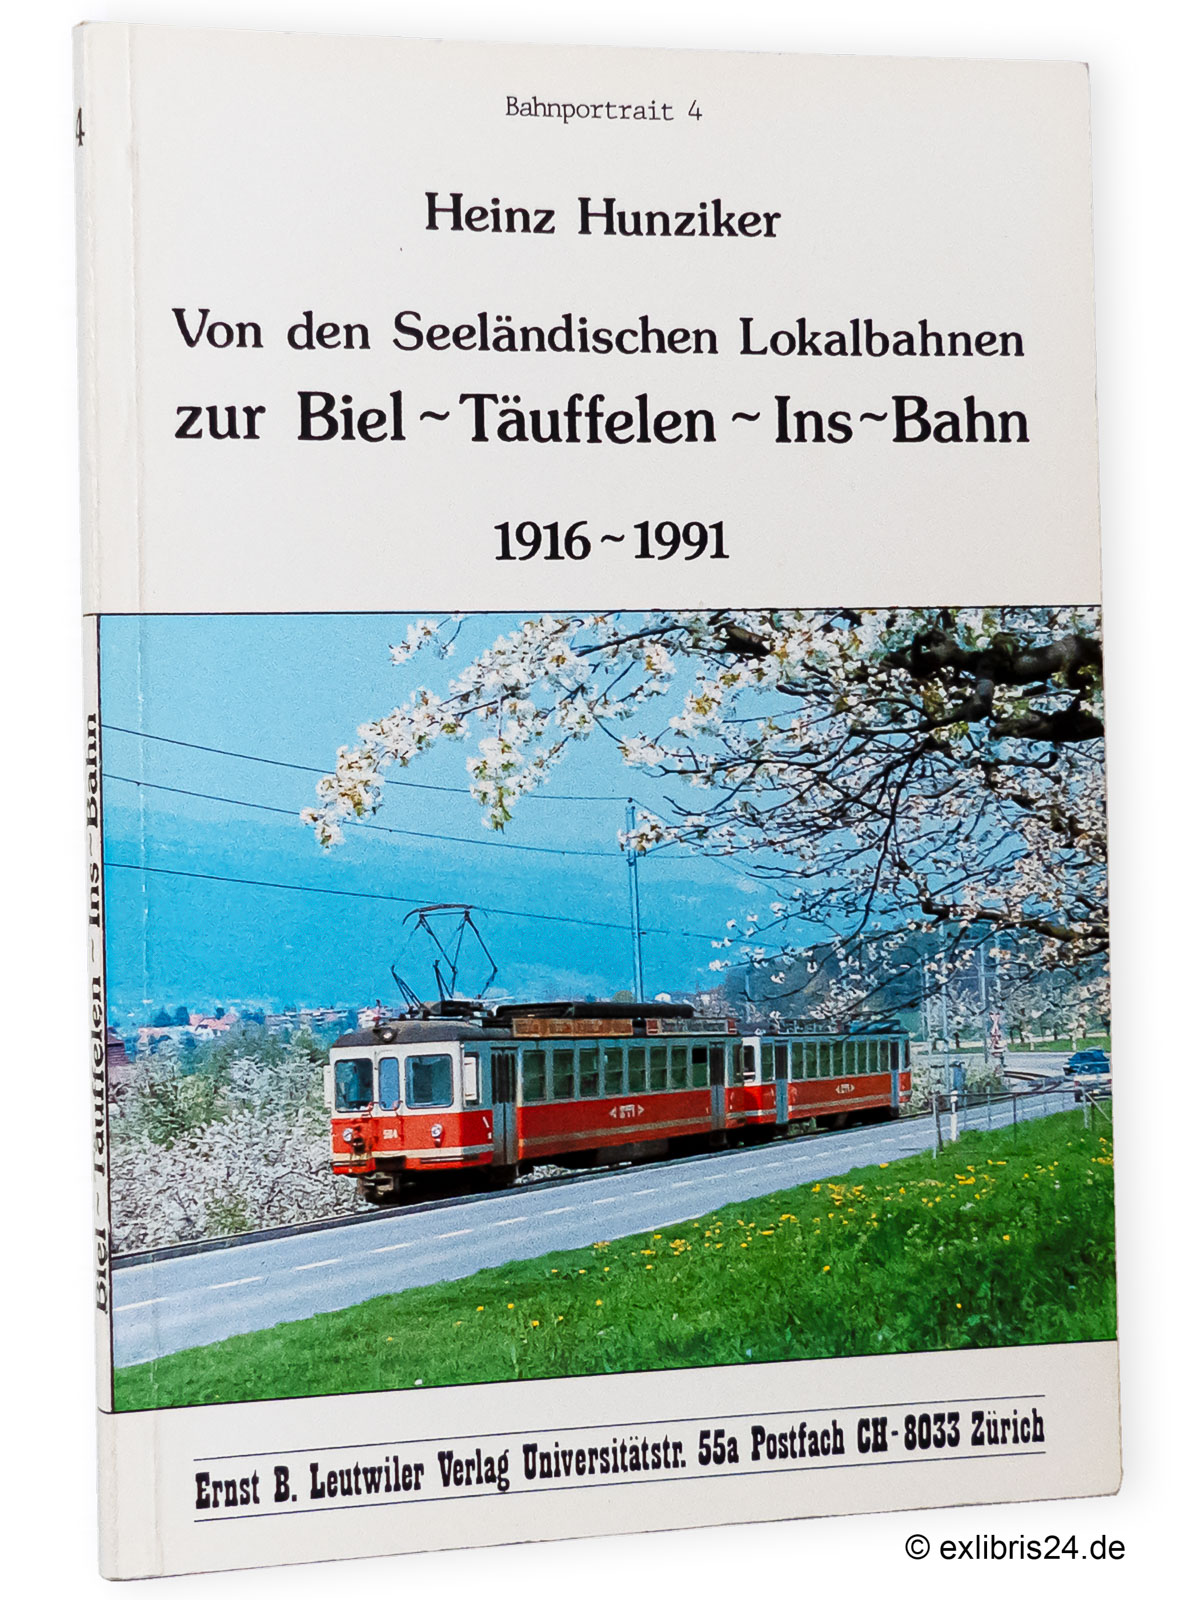 Von den seeländischen Lokalbahnen zur Biel-Täuffelen-Ins-Bahn 1916-1991 : (Reihe: Bahnportrait, Band 4) - Hunziker, Heinz